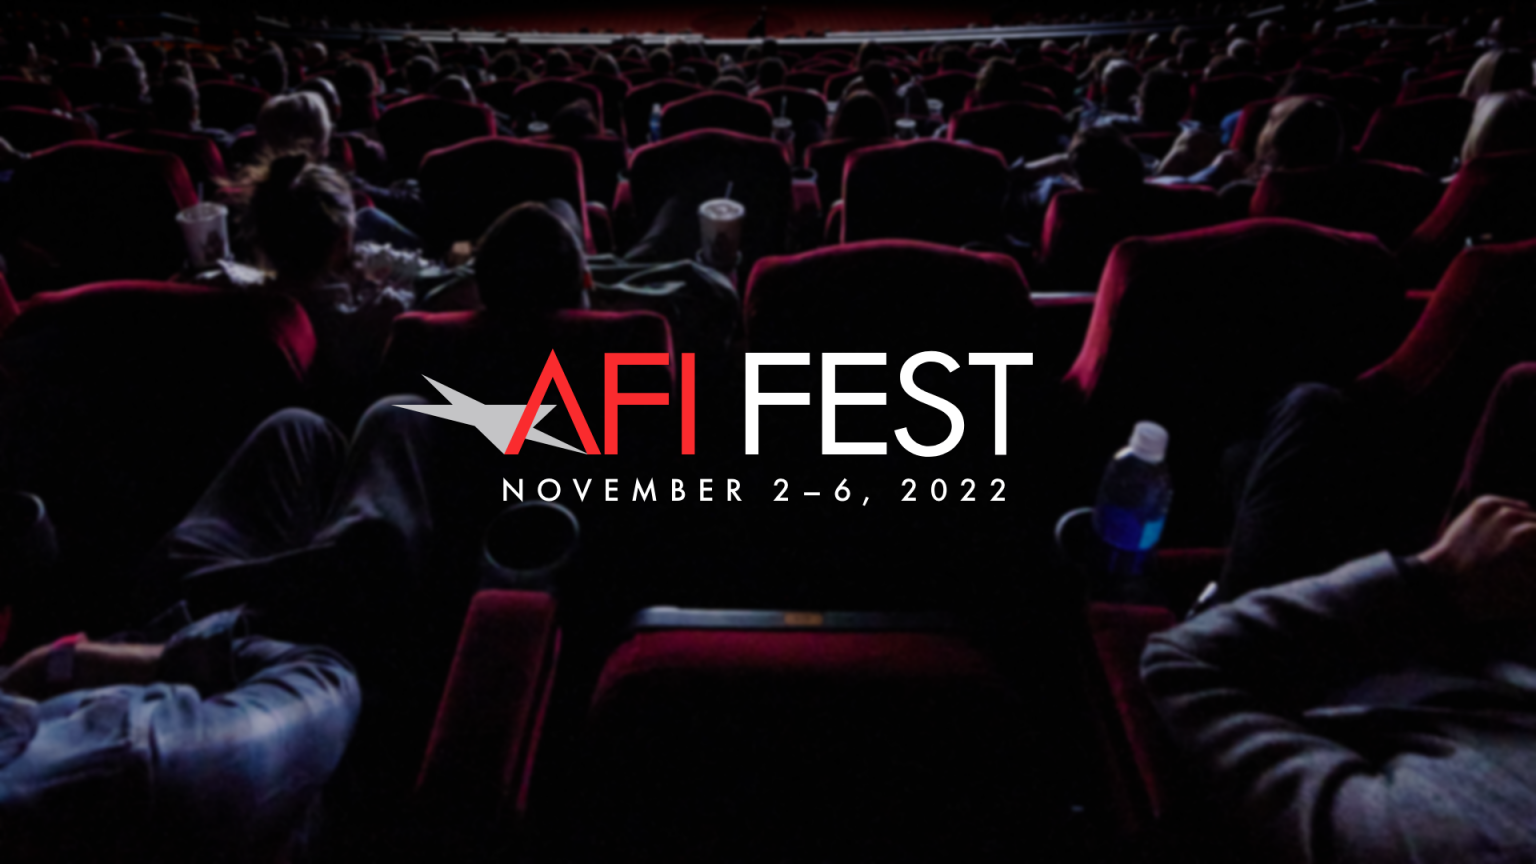 AFI FEST 2022 Announces Dates American Film Institute